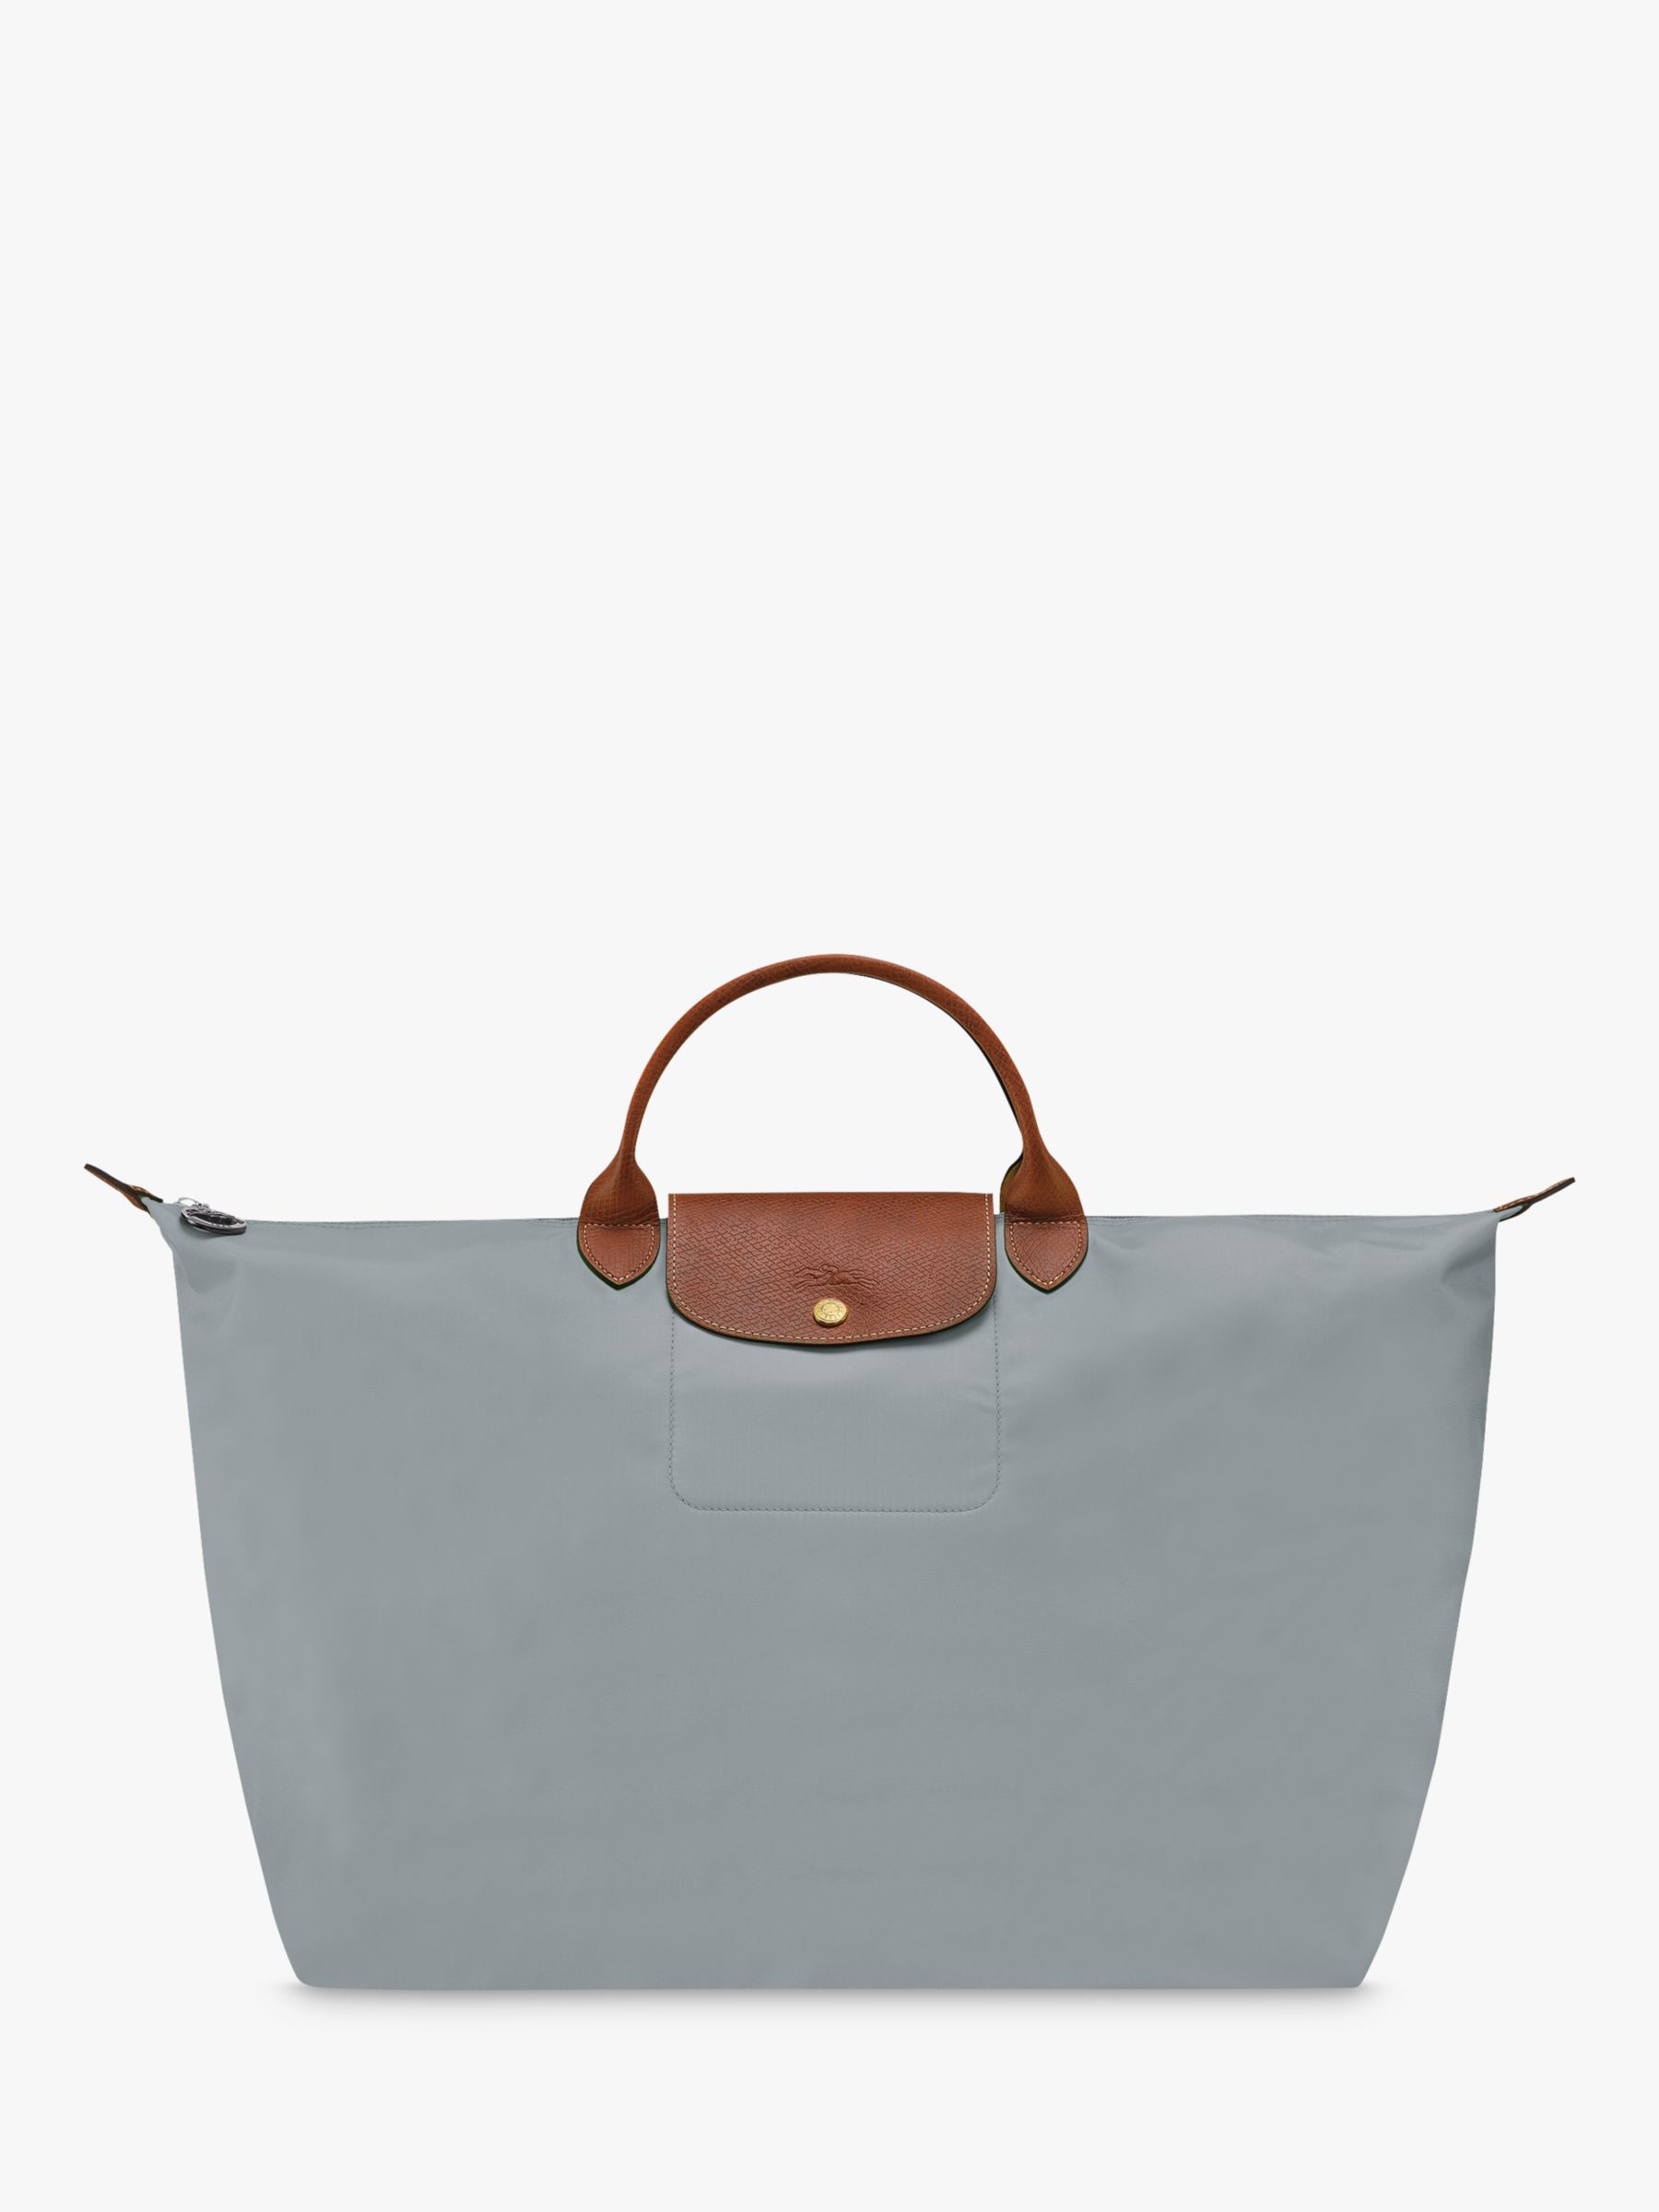 Оригинальная дорожная сумка Le Pliage Longchamp, сталь